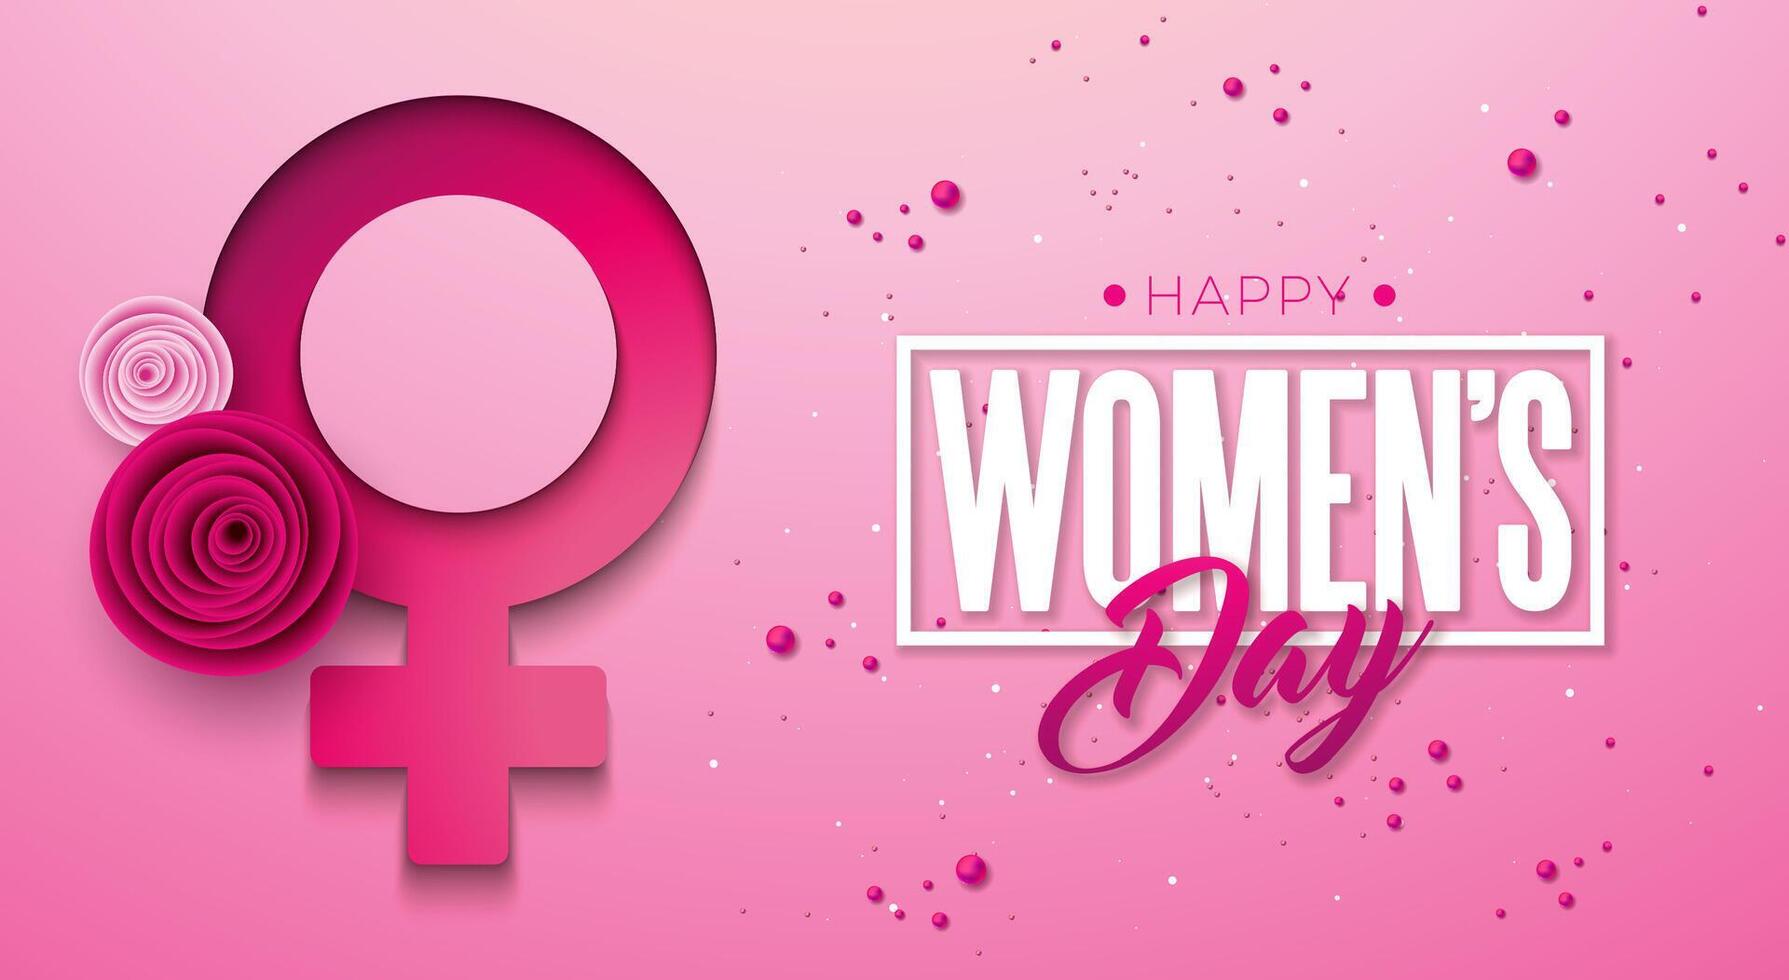 8 Mars internationell kvinnors dag vektor illustration med vår färgrik reste sig blomma och kvinna symbol på ljus rosa bakgrund. kvinnor eller mor dag tema mall för flygblad, hälsning kort, webb